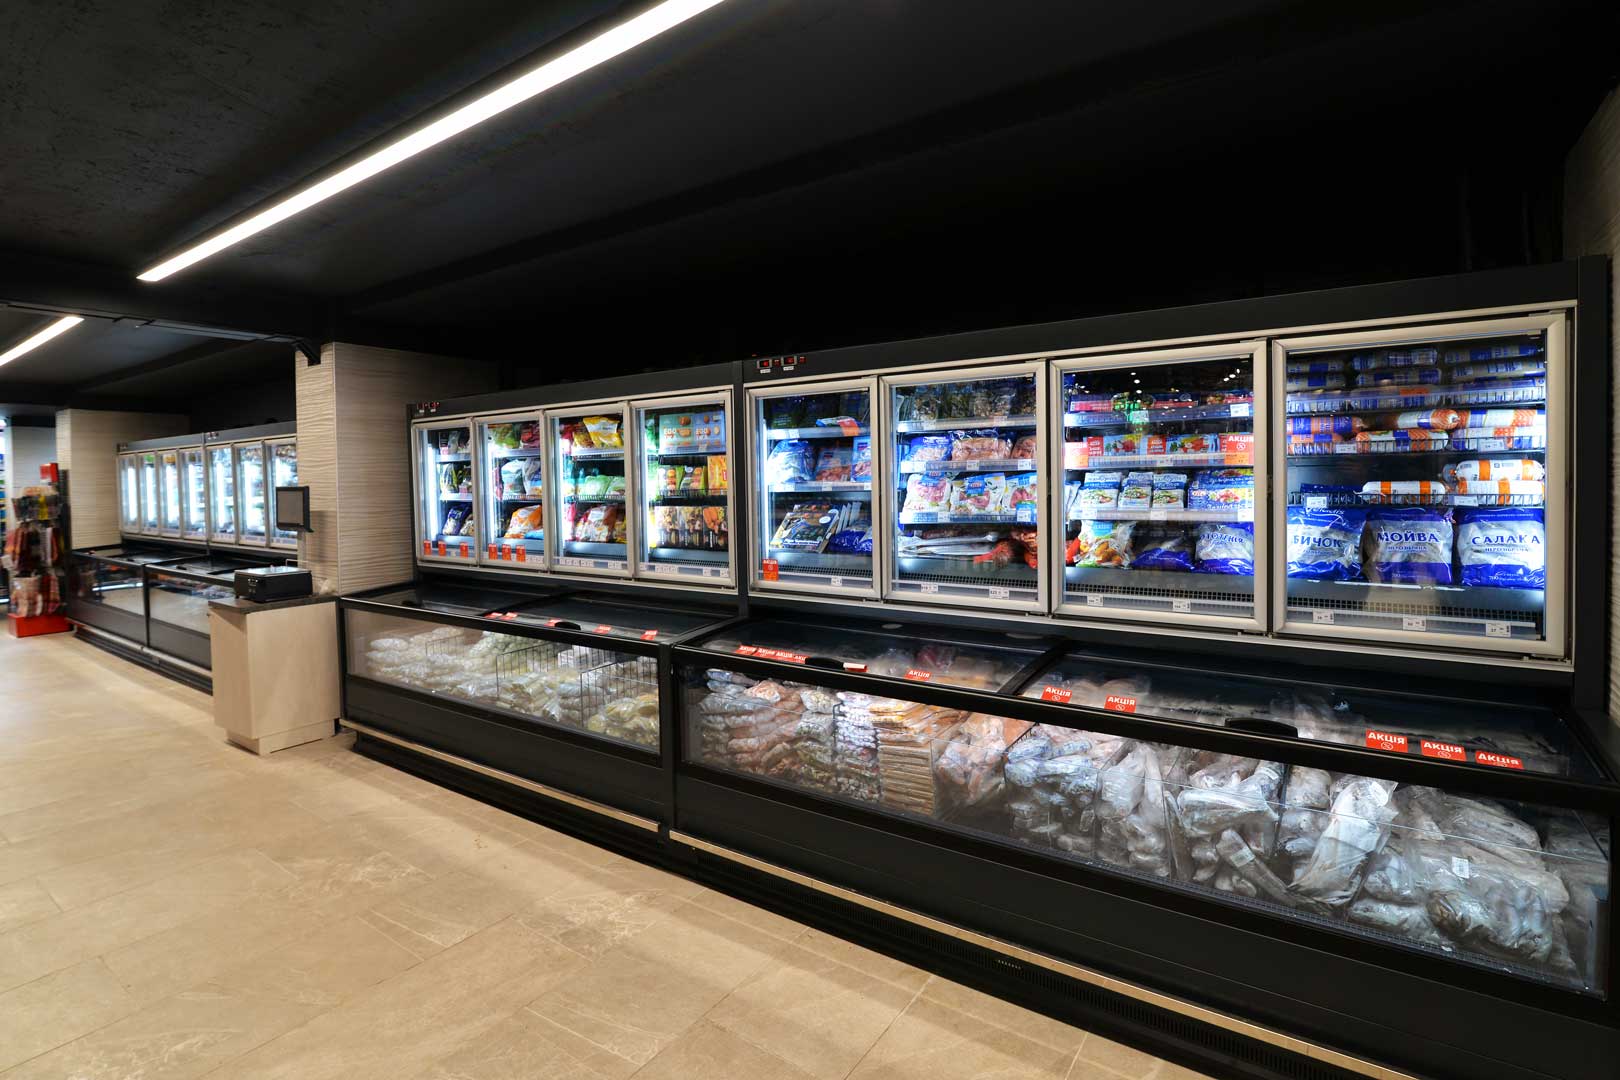 Frozen foods units Аlaska combi 2 MHV 110 LT D C 200, supermarket "Semya"